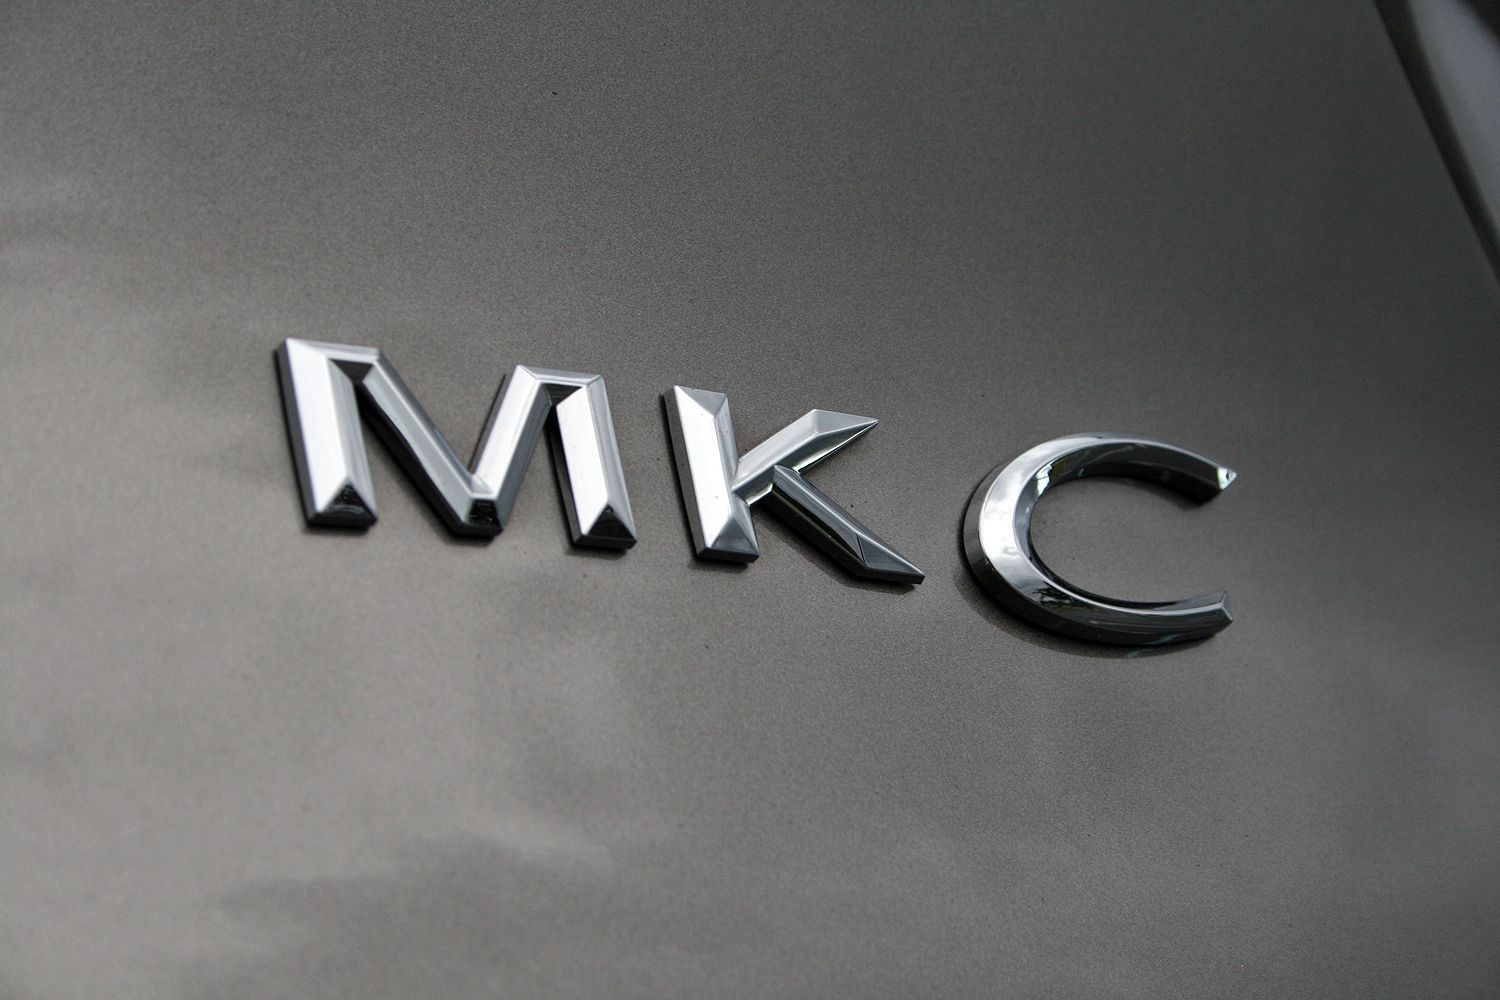 2016 Lincoln MKC – Driven